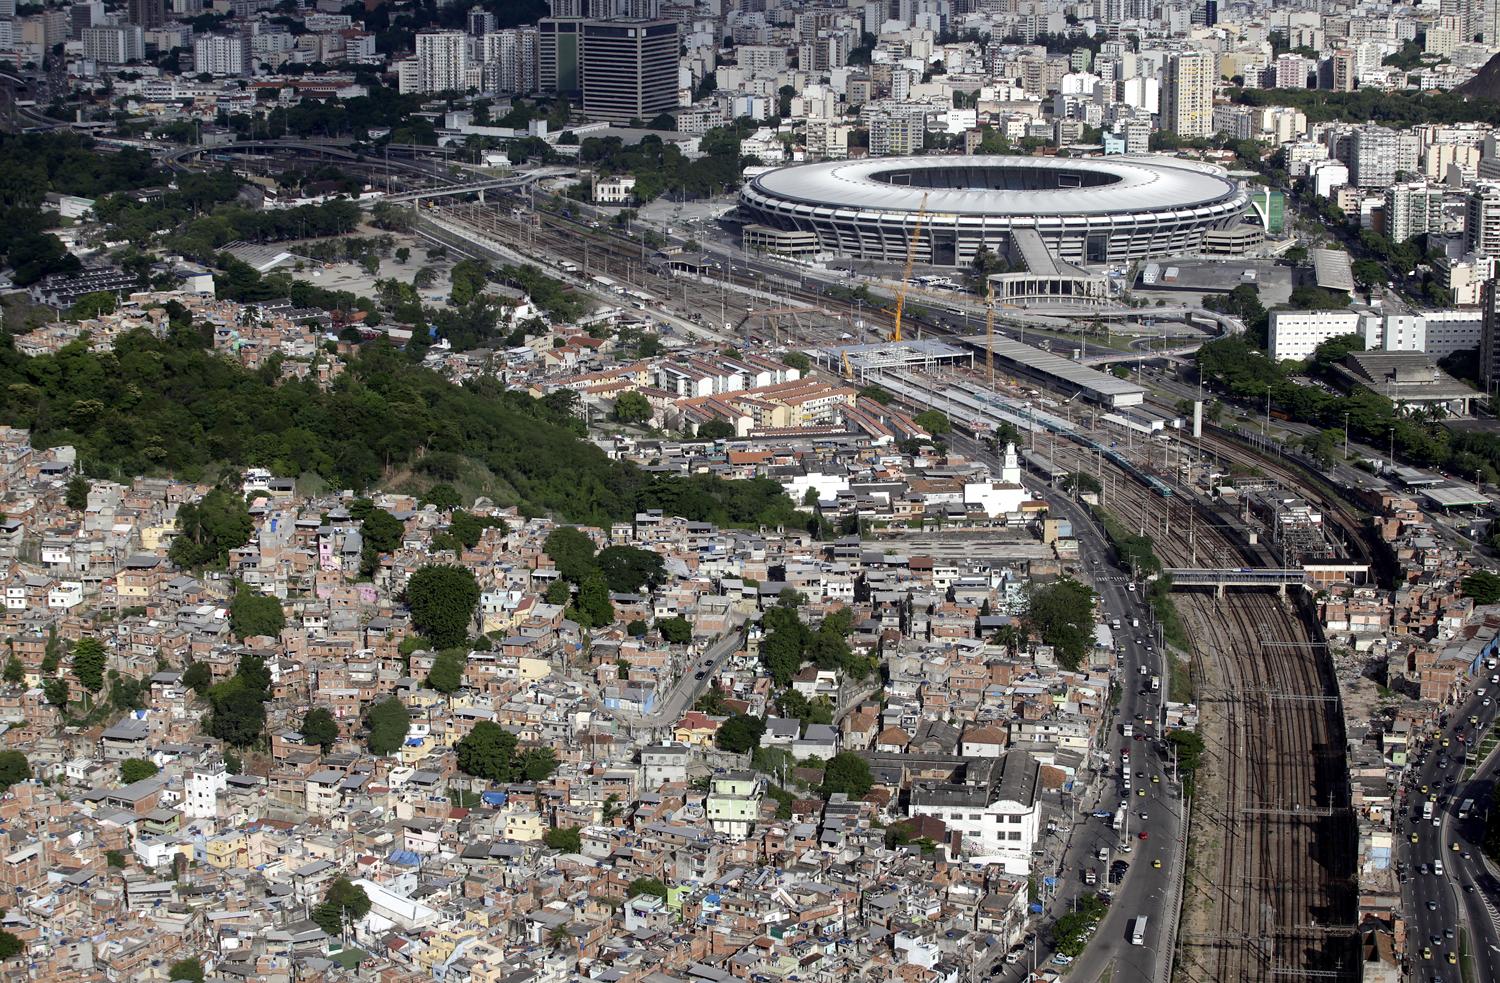 A Maracana szomszédságában (balra lent) hatalmas nyomornegyed húzódik meg